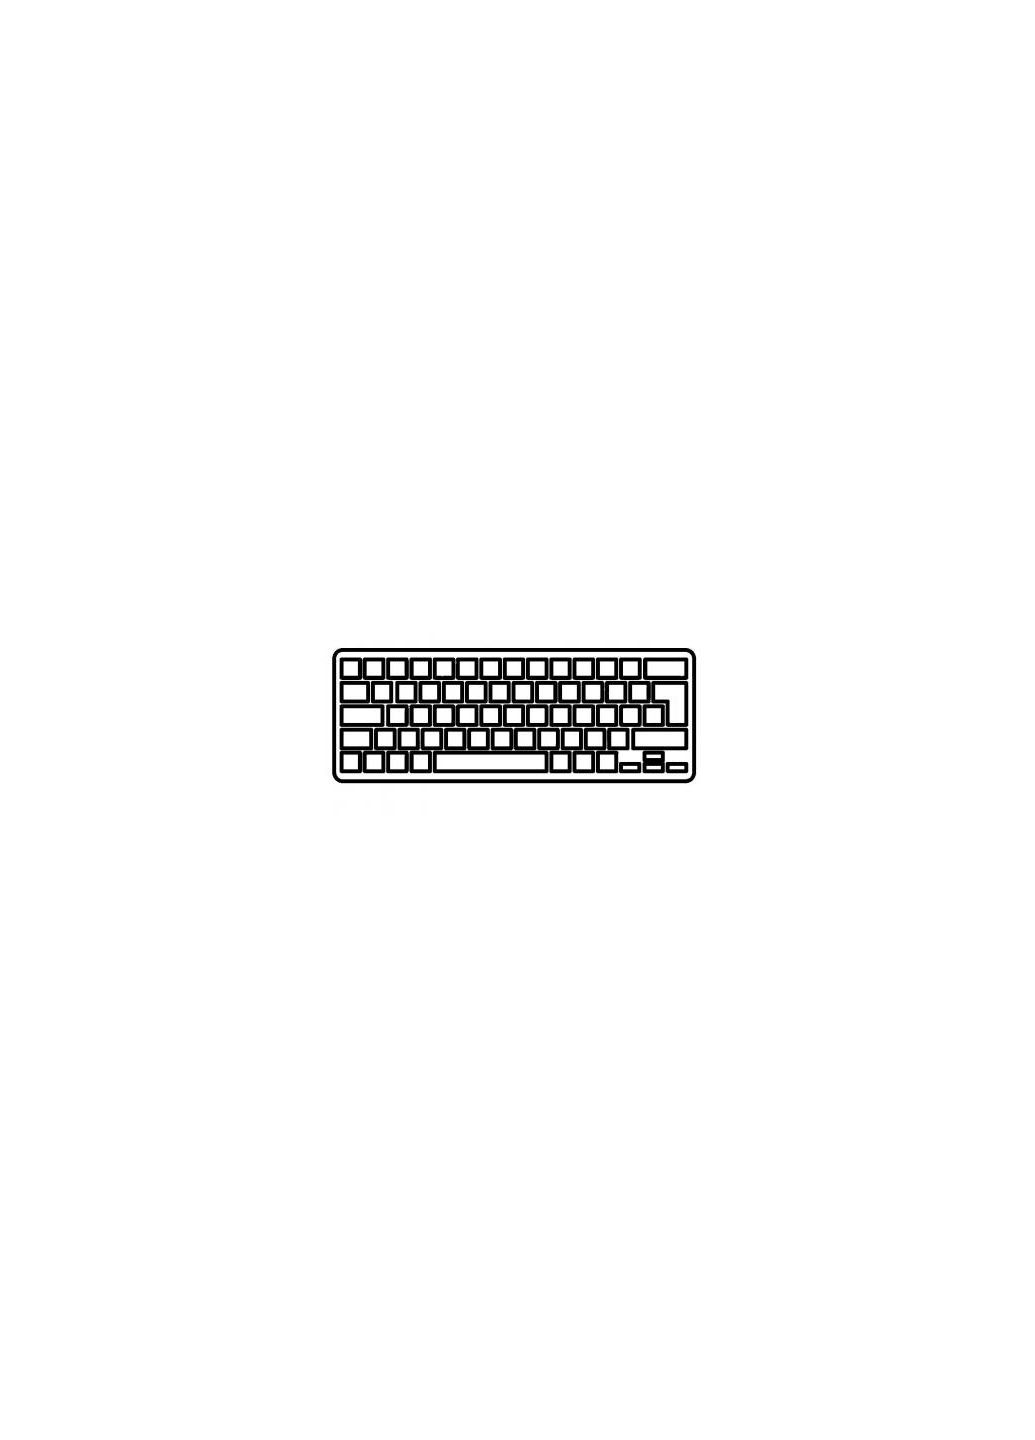 Клавиатура ноутбука Inspiron 143000/5447/5445/7447 Series black,wo/frame,UA/US (A46022) Dell inspiron 14-3000/5447/5445/7447 series black, wo/fr (276707103)